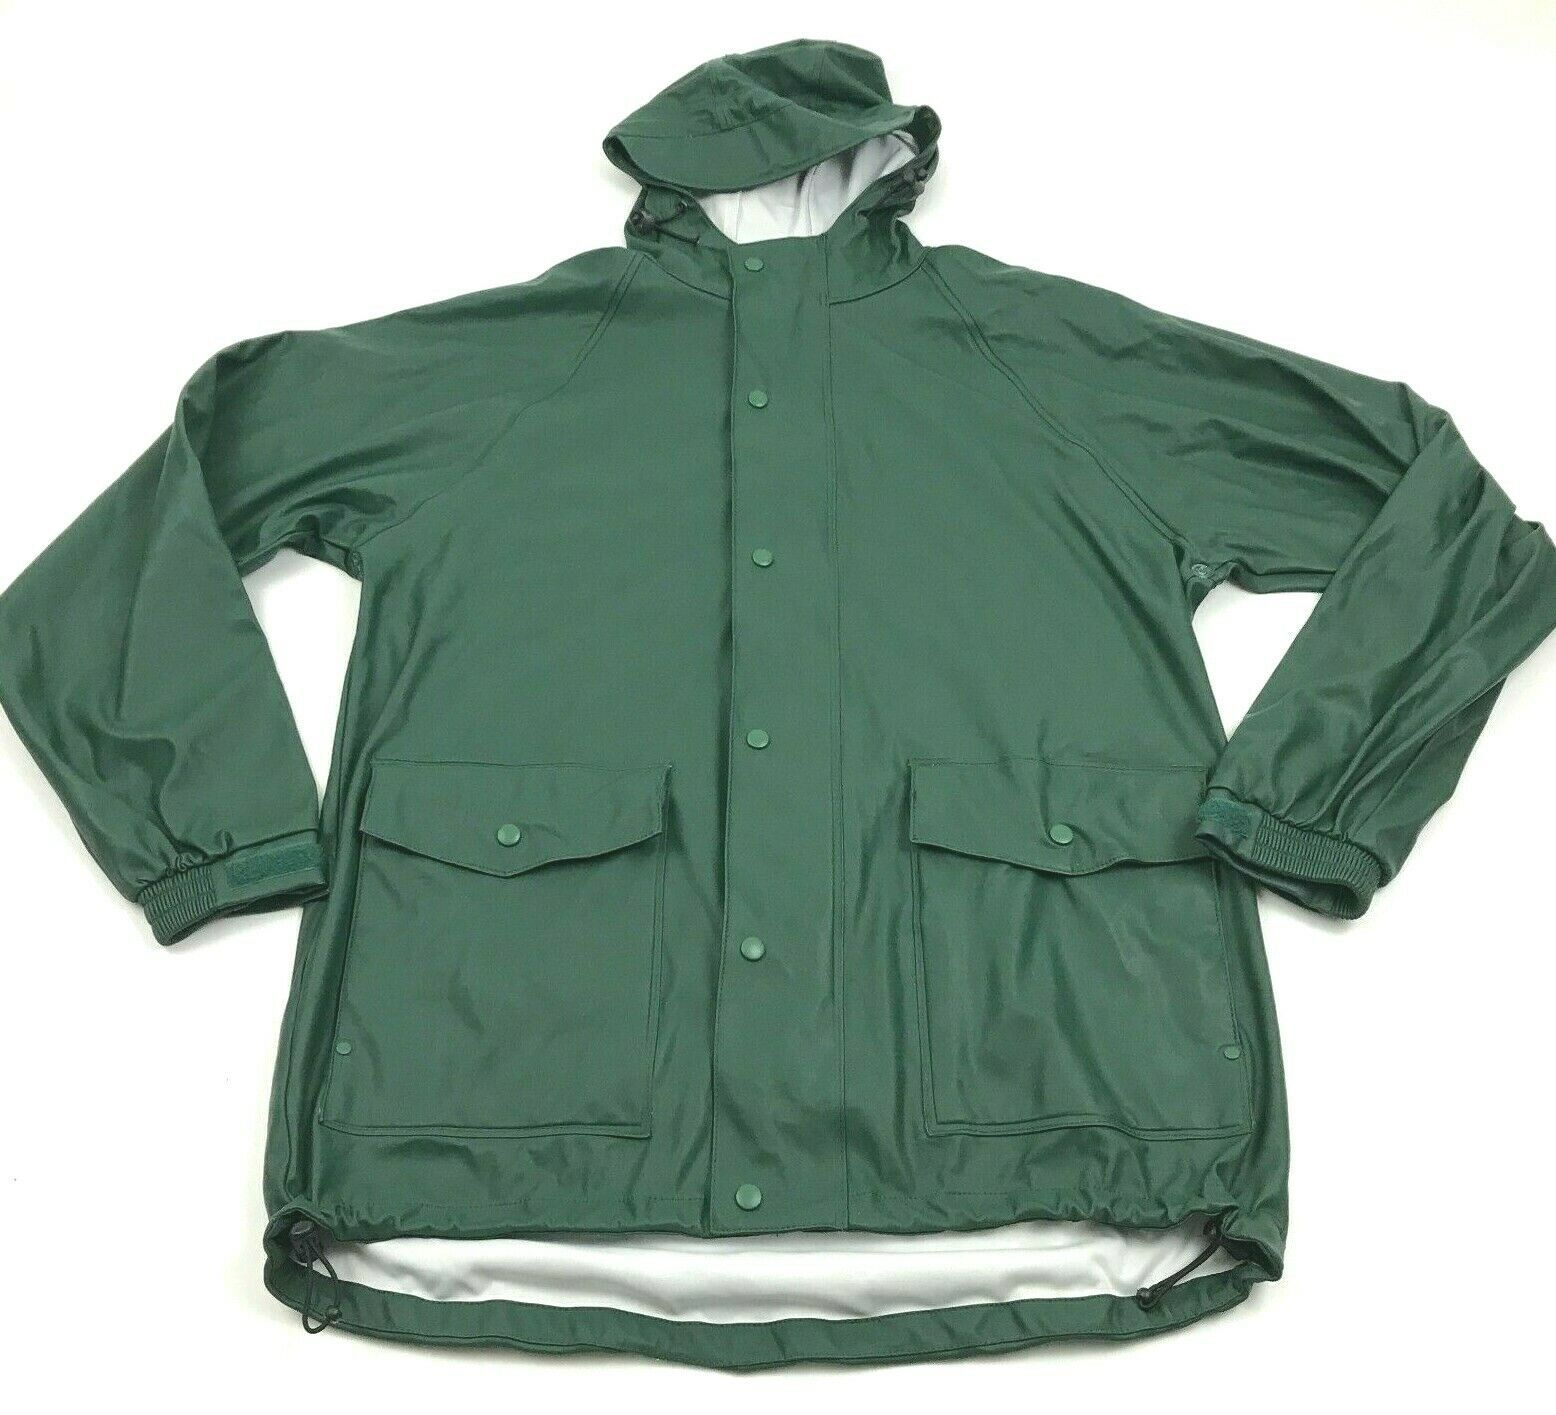 Duluth Trading Rain Jacket Green Hooded Parka Raincoat Size Medium ...